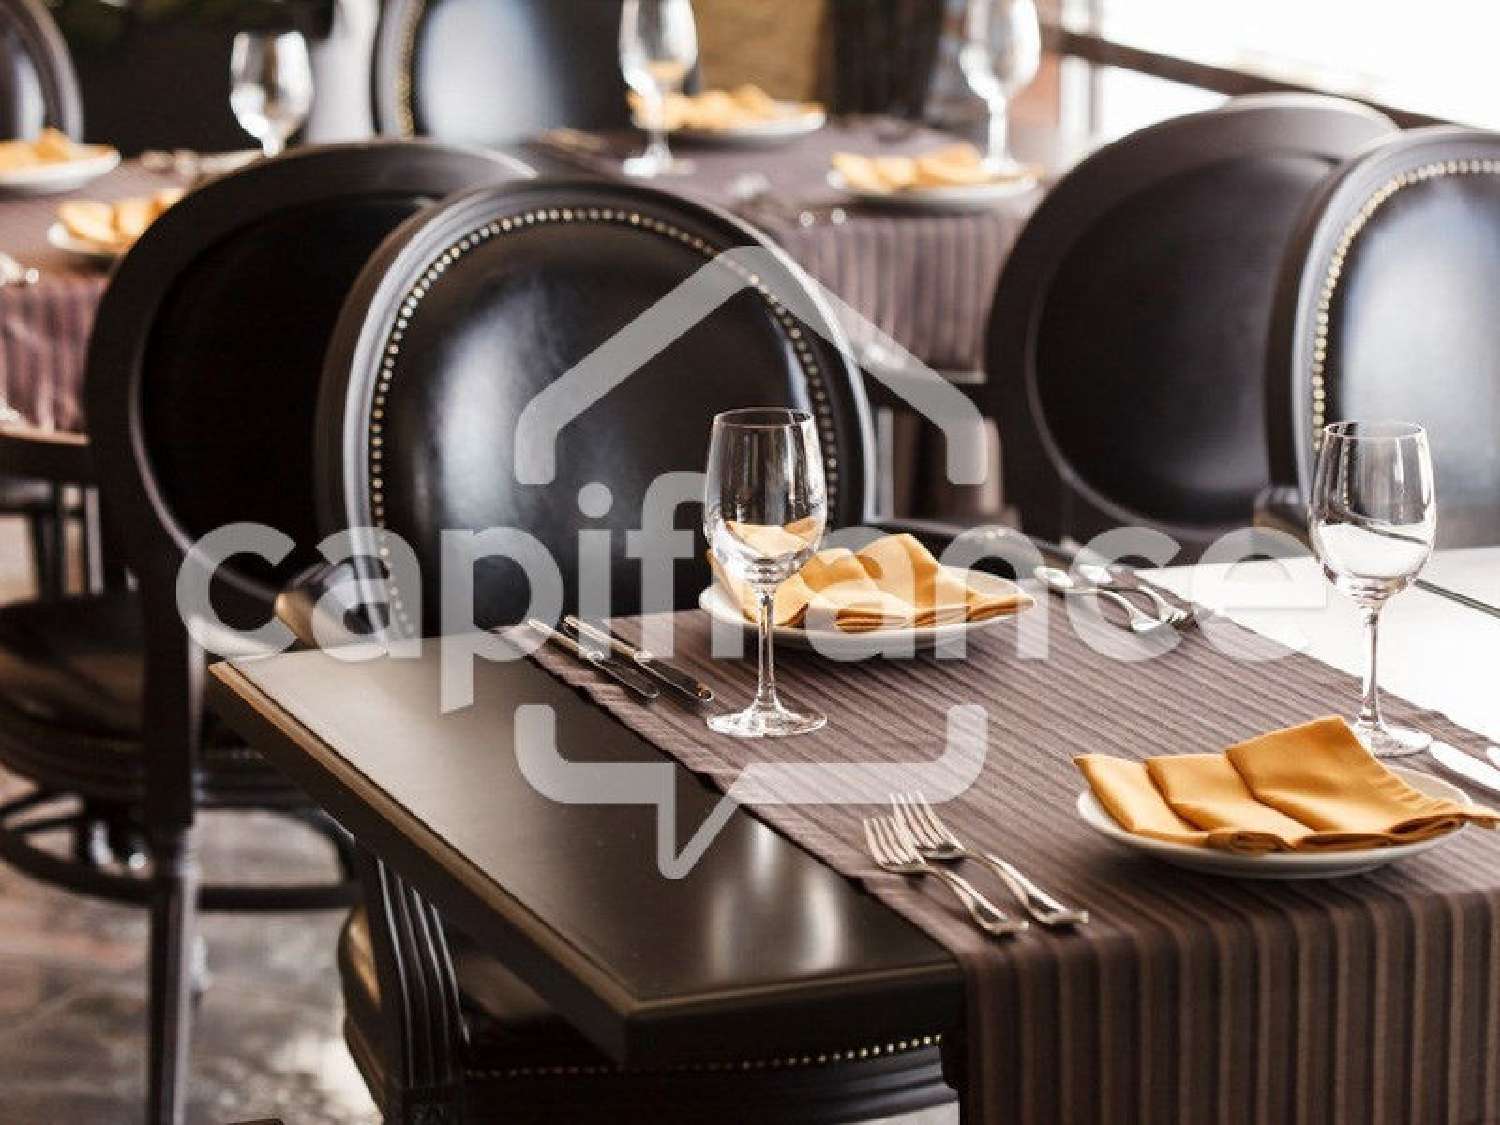 Aix-les-Bains Savoie Restaurant Bild 6821849